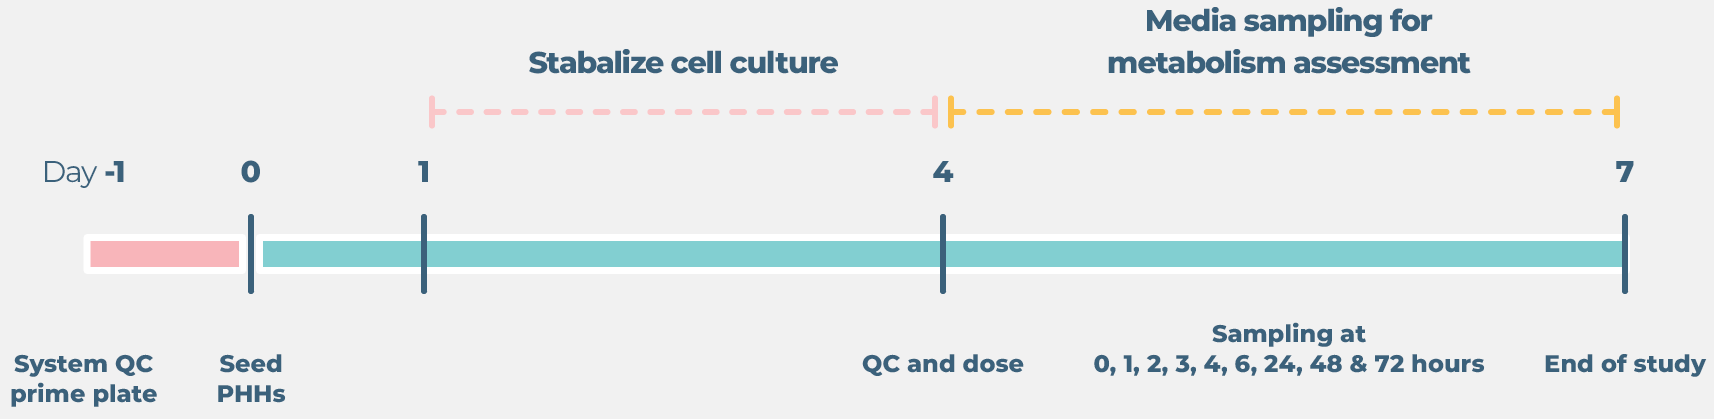 Standard liver drug metabolism cell culture timeline